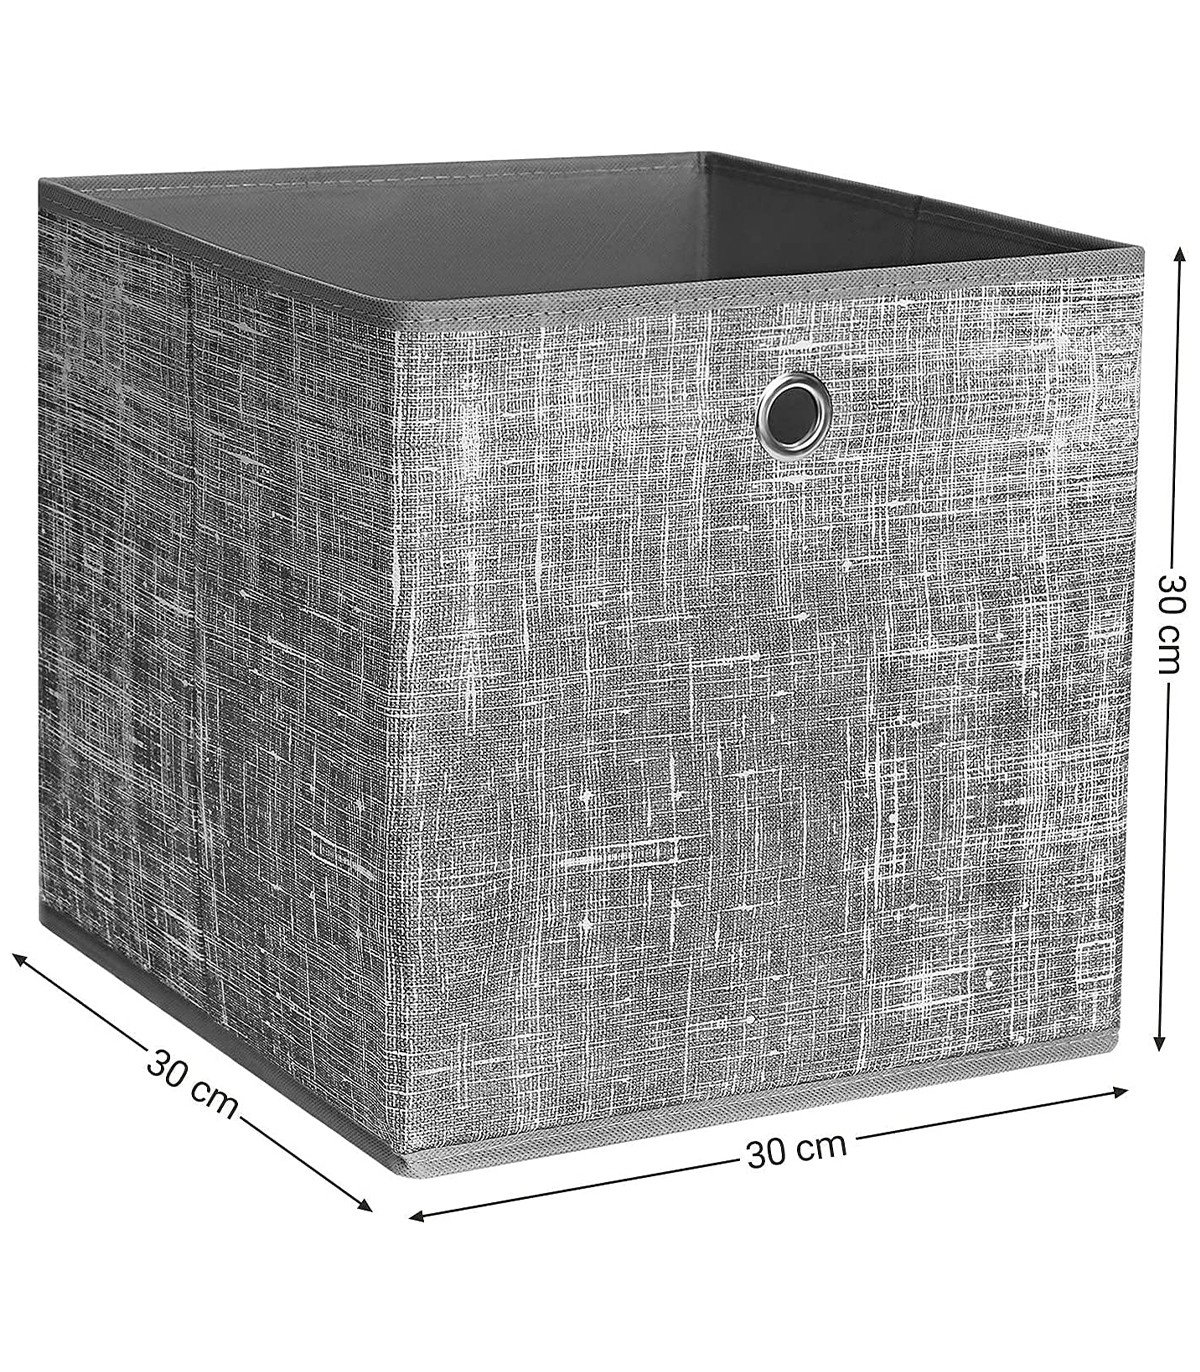 Cube de rangement 30 x 30 cm smart (lot de 2)